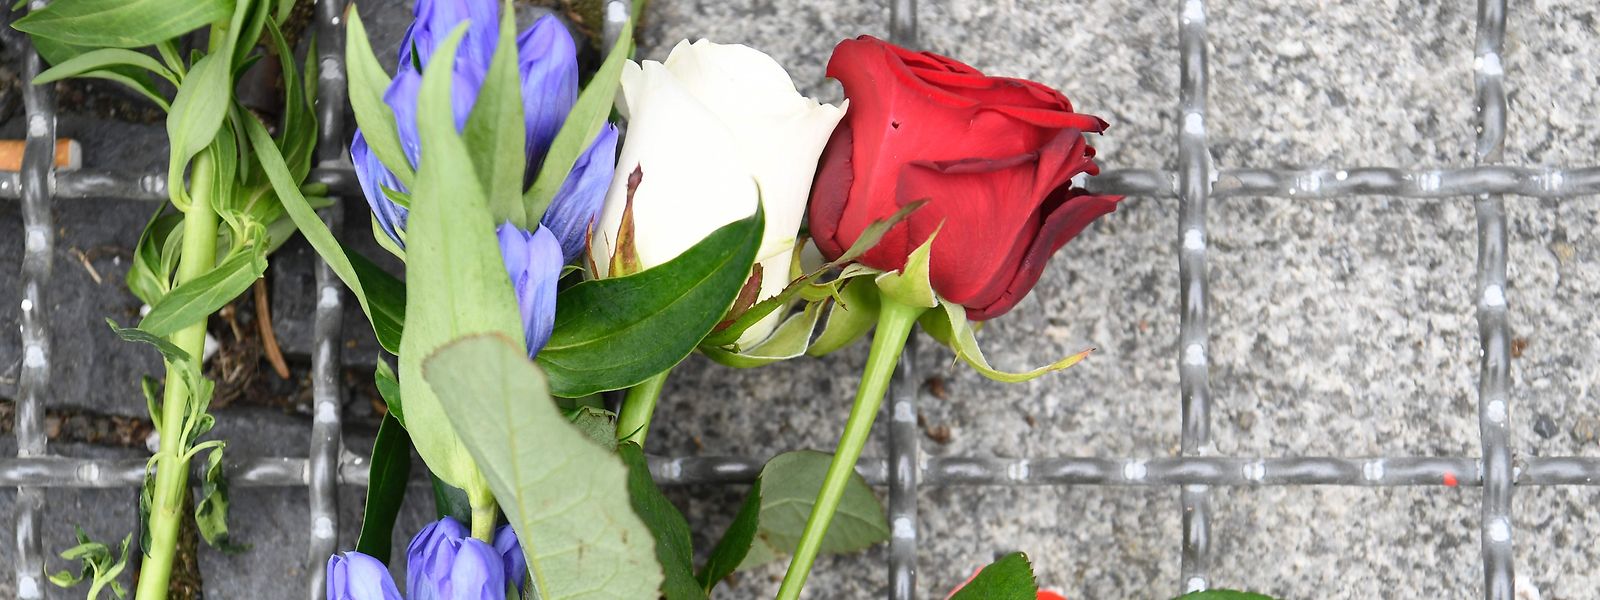 86 morts et 458 blessés: Nice commémore mercredi l'attentat jihadiste de la Promenade des Anglais.